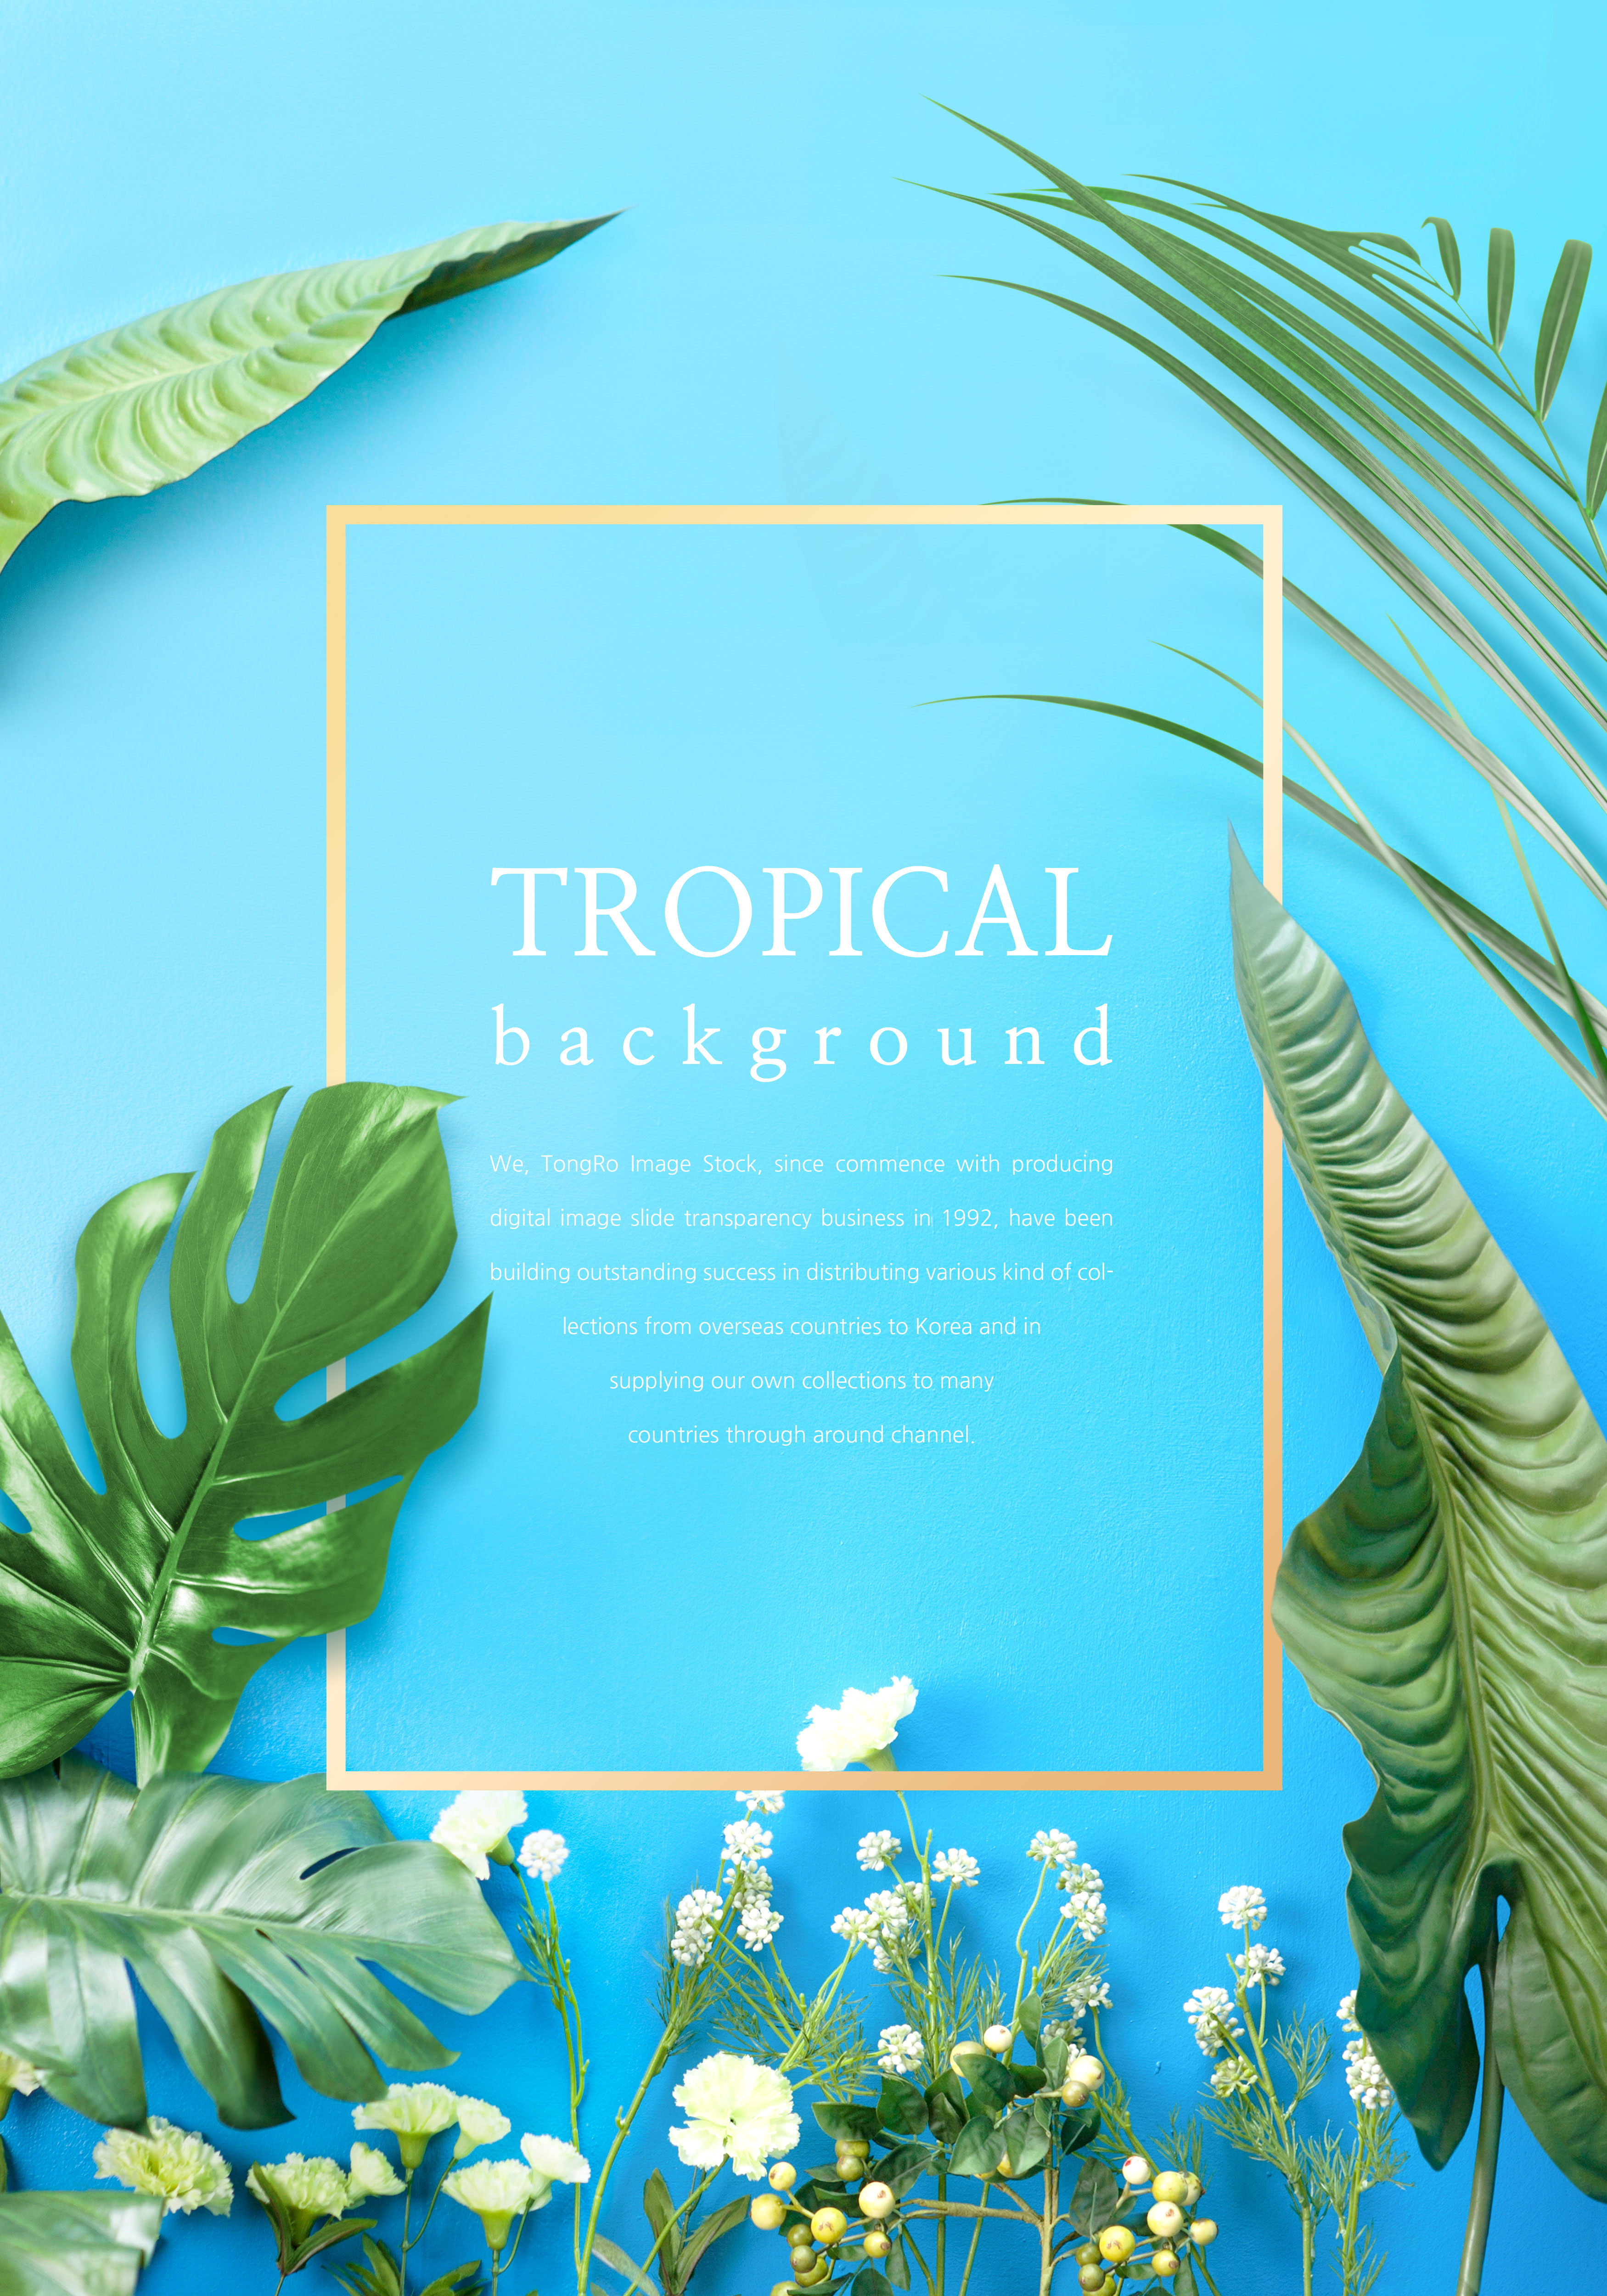 热带主题叶子花卉背景图片设计素材插图